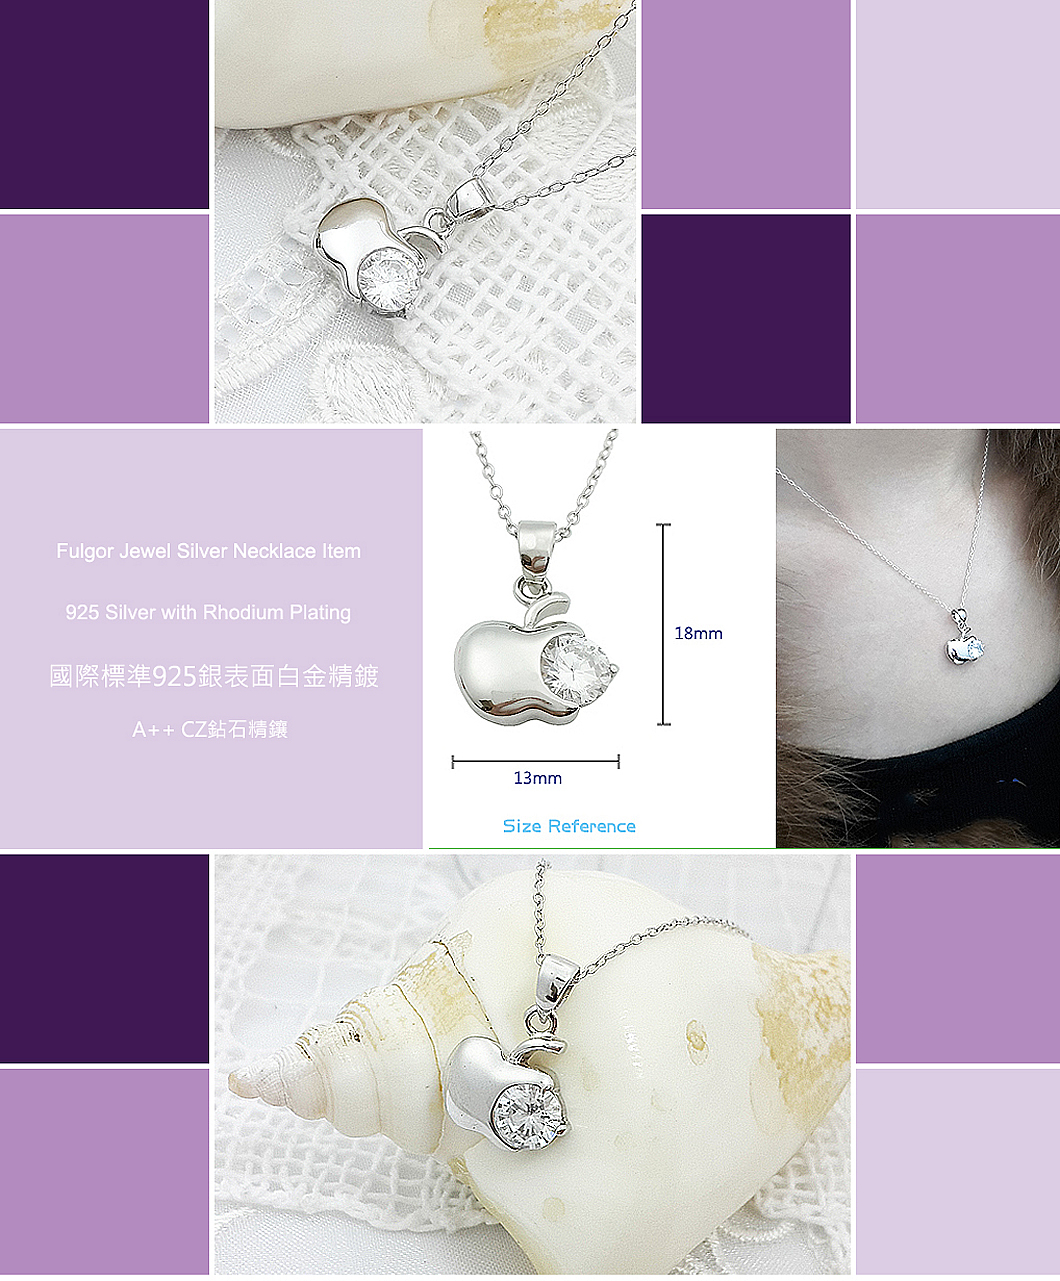 Silver-Necklace-FU14000081-FulgorJewel-info.jpg